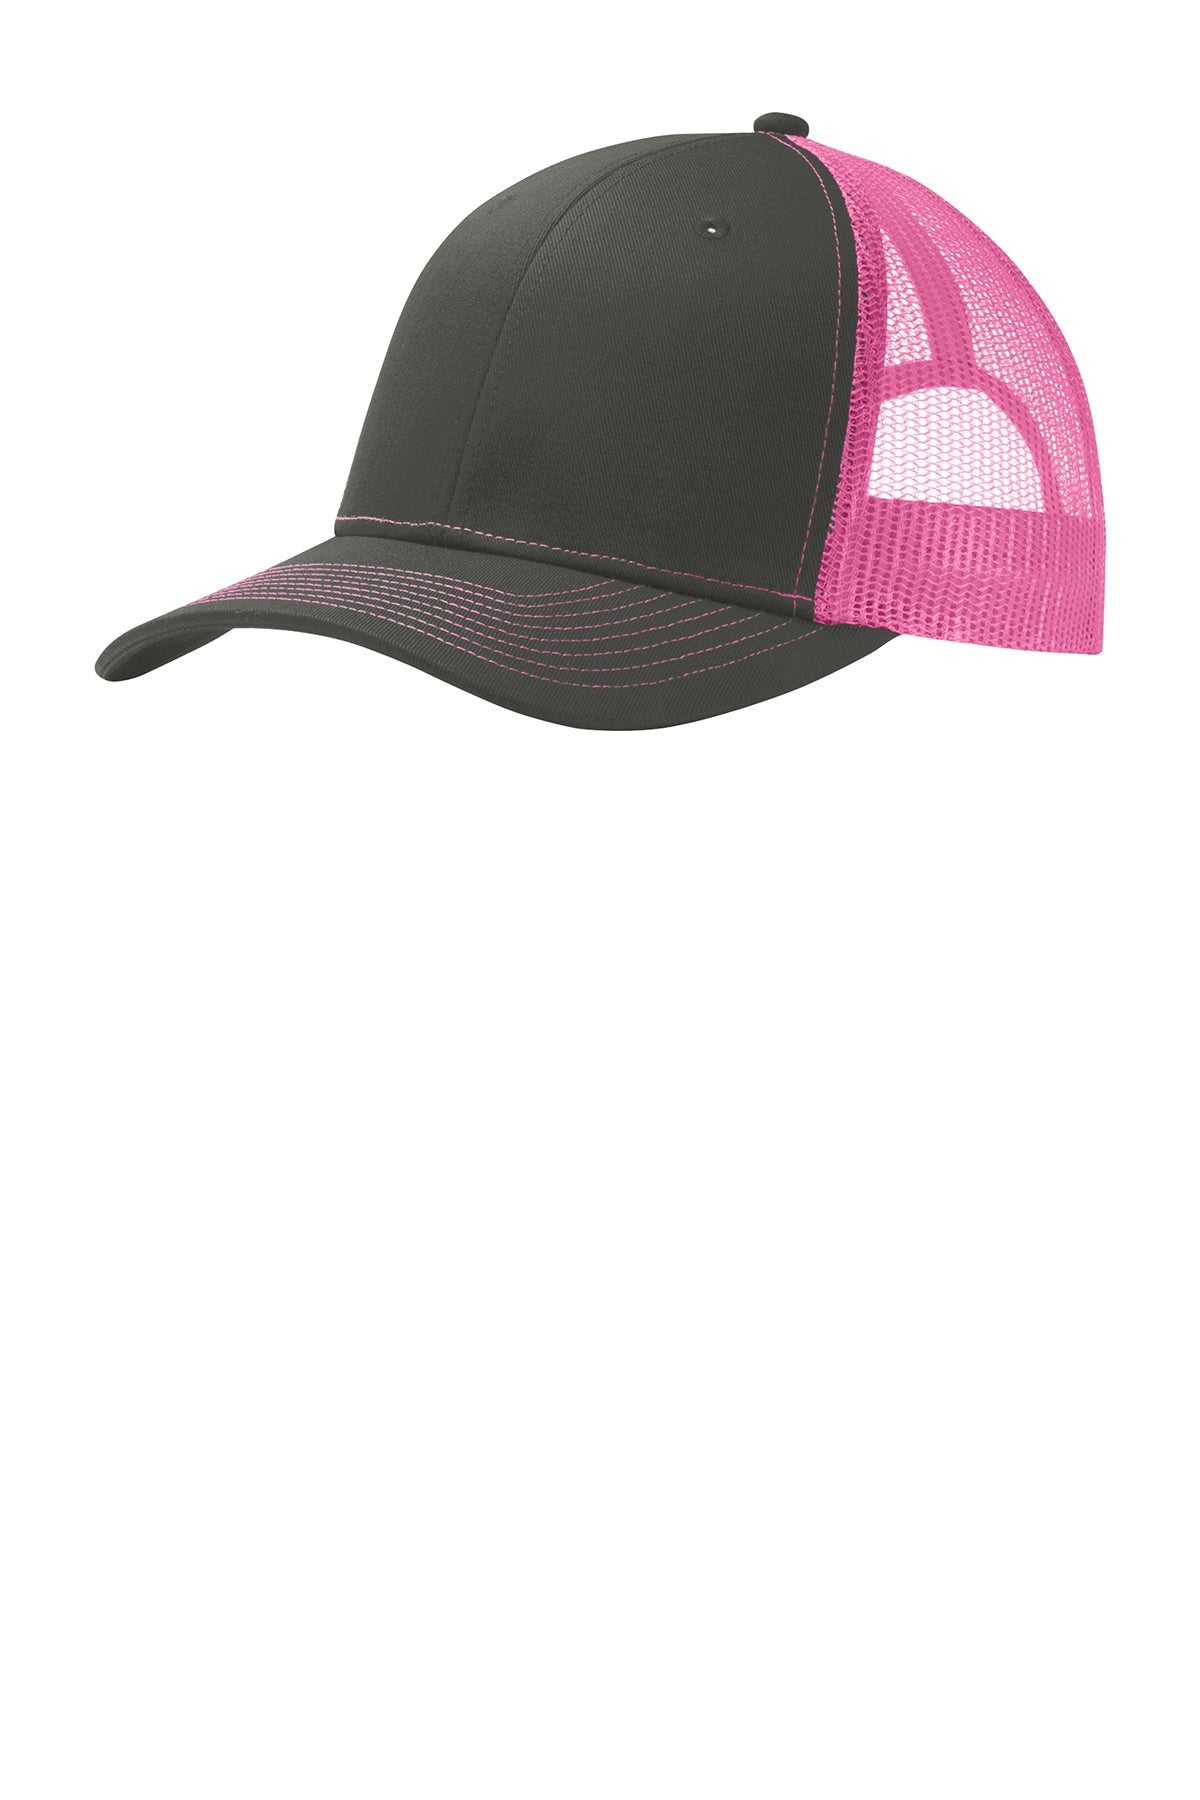 Port Authority Snapback Trucker Branded Caps, Grey Steel/ Neon Pink